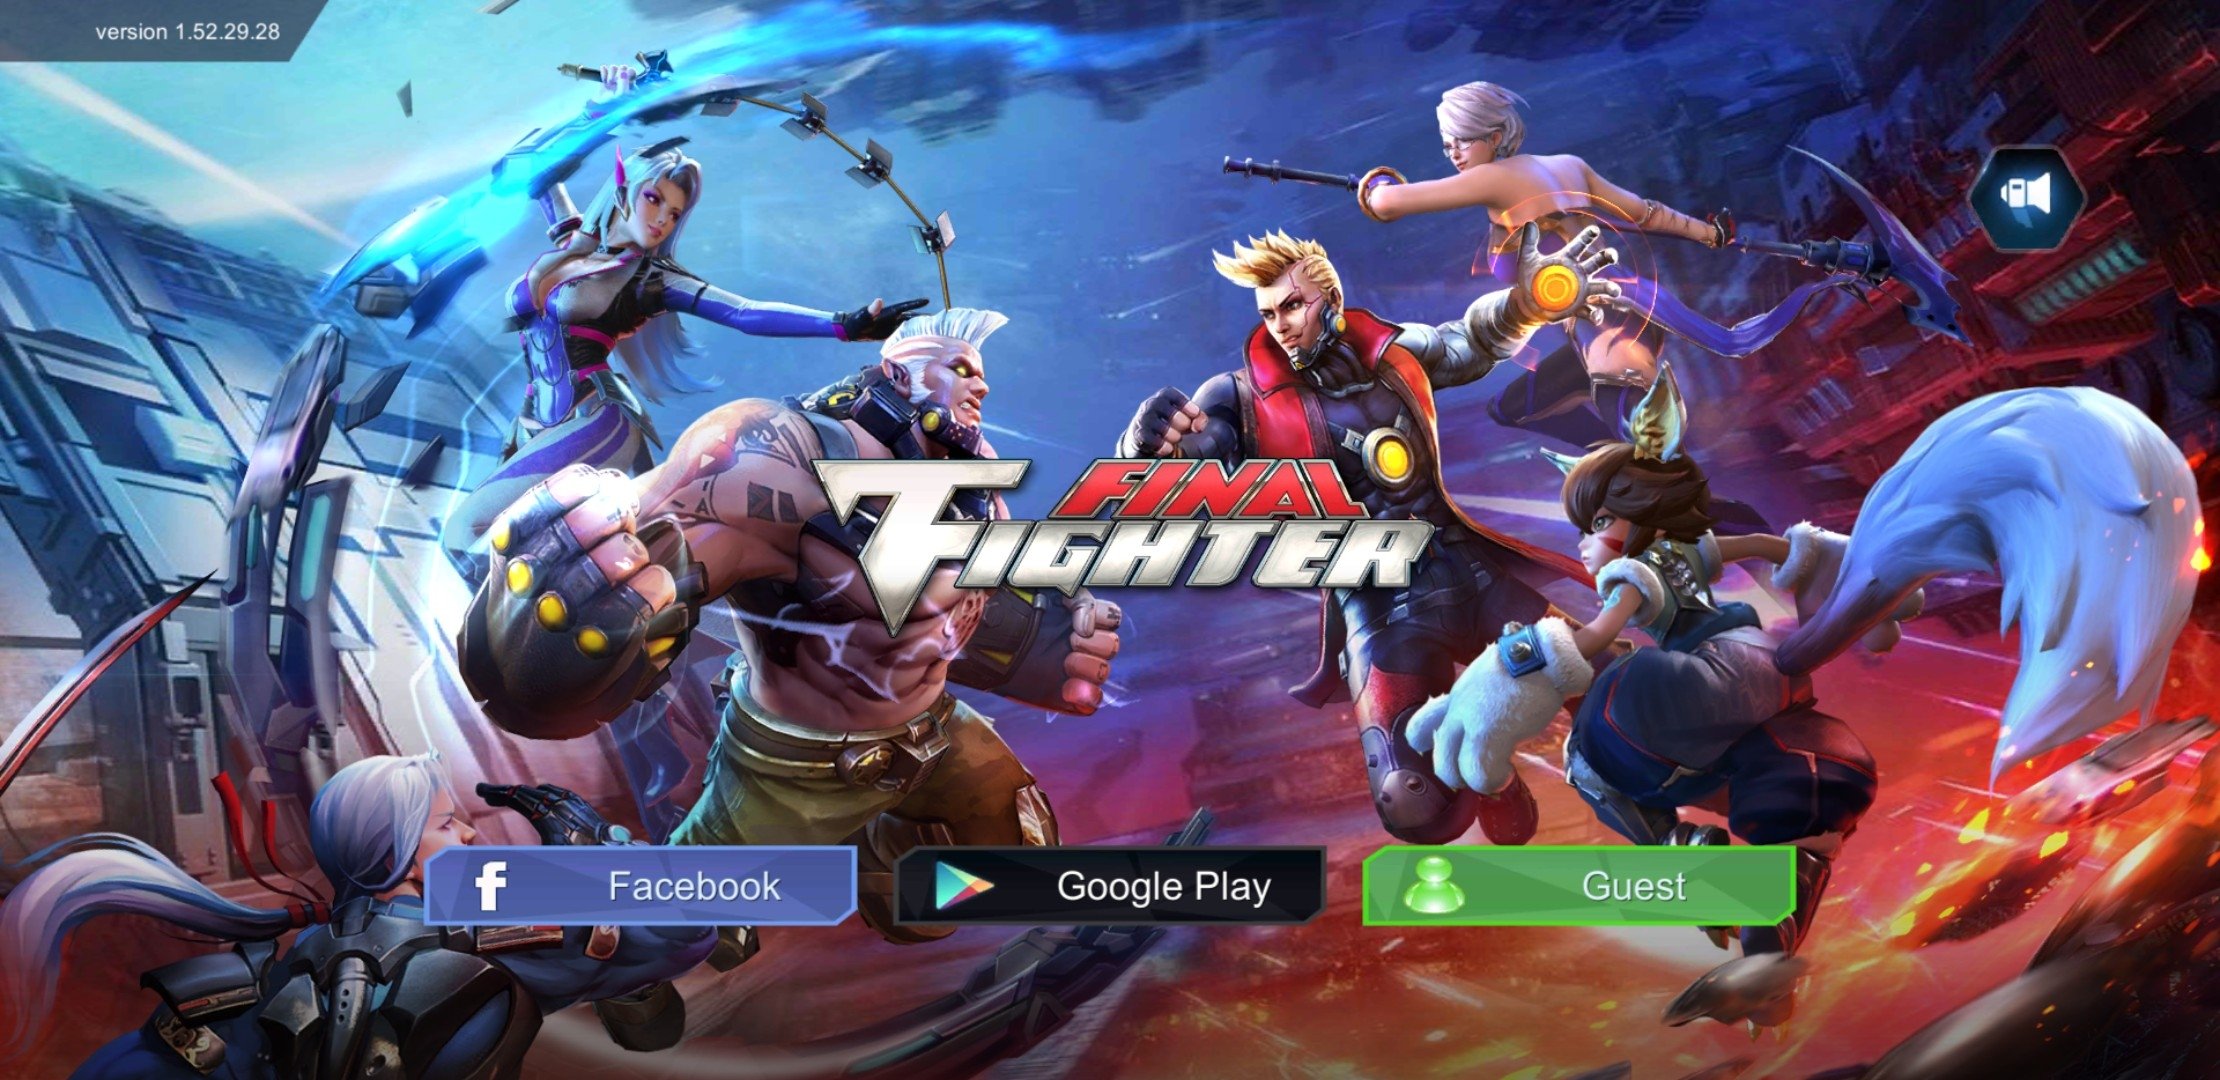 Melhor Jogo de Luta Para Android - FINAL FIGHTER - Loucura Game